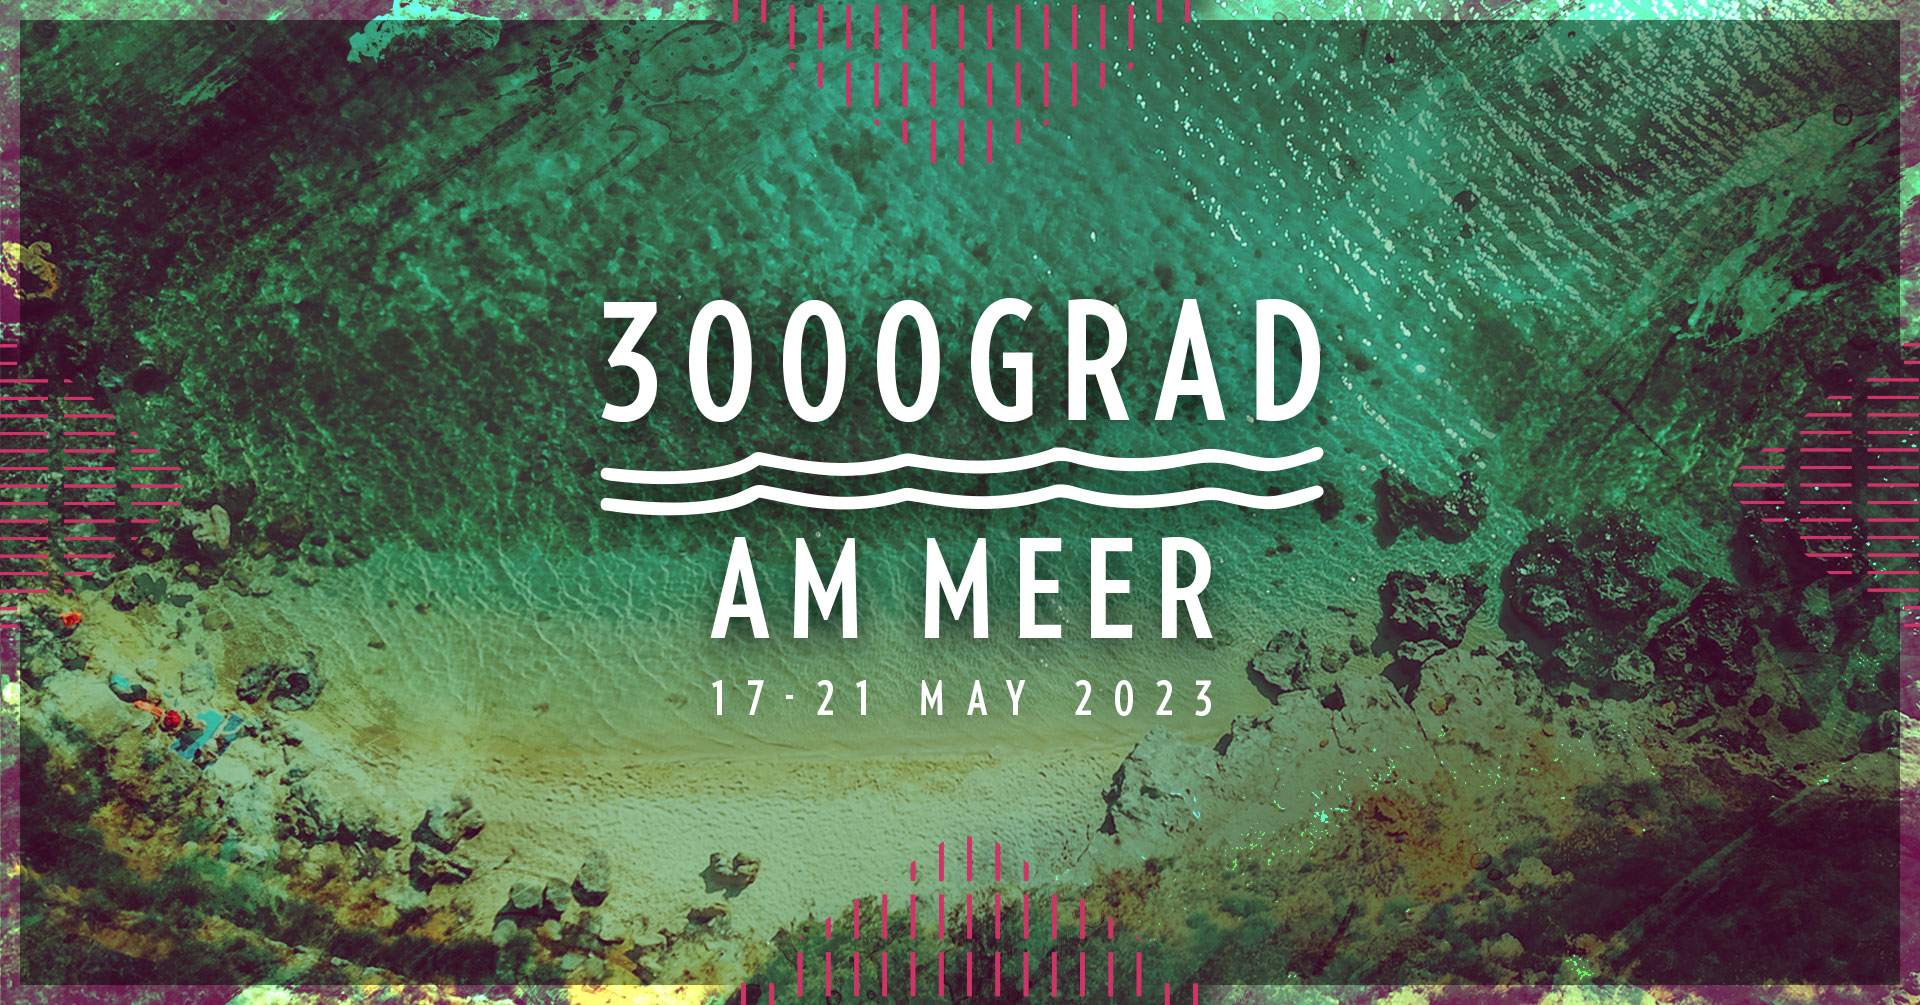 3000Grad am Meer / Croatia - フライヤー表